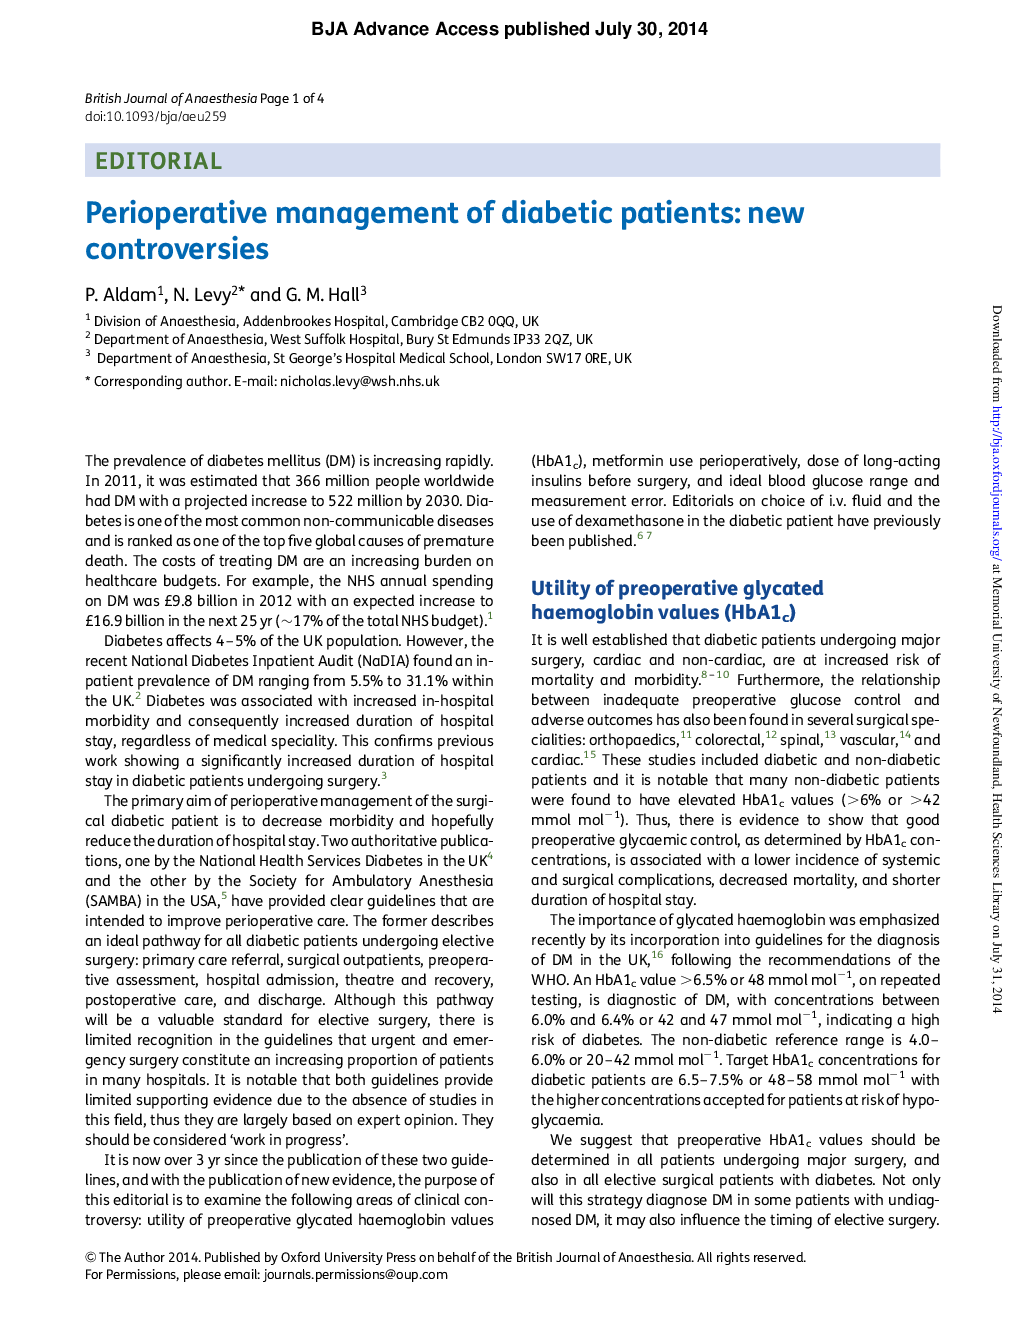 مدیریت درمانی بیماران دیابتی: اختلافات جدید 